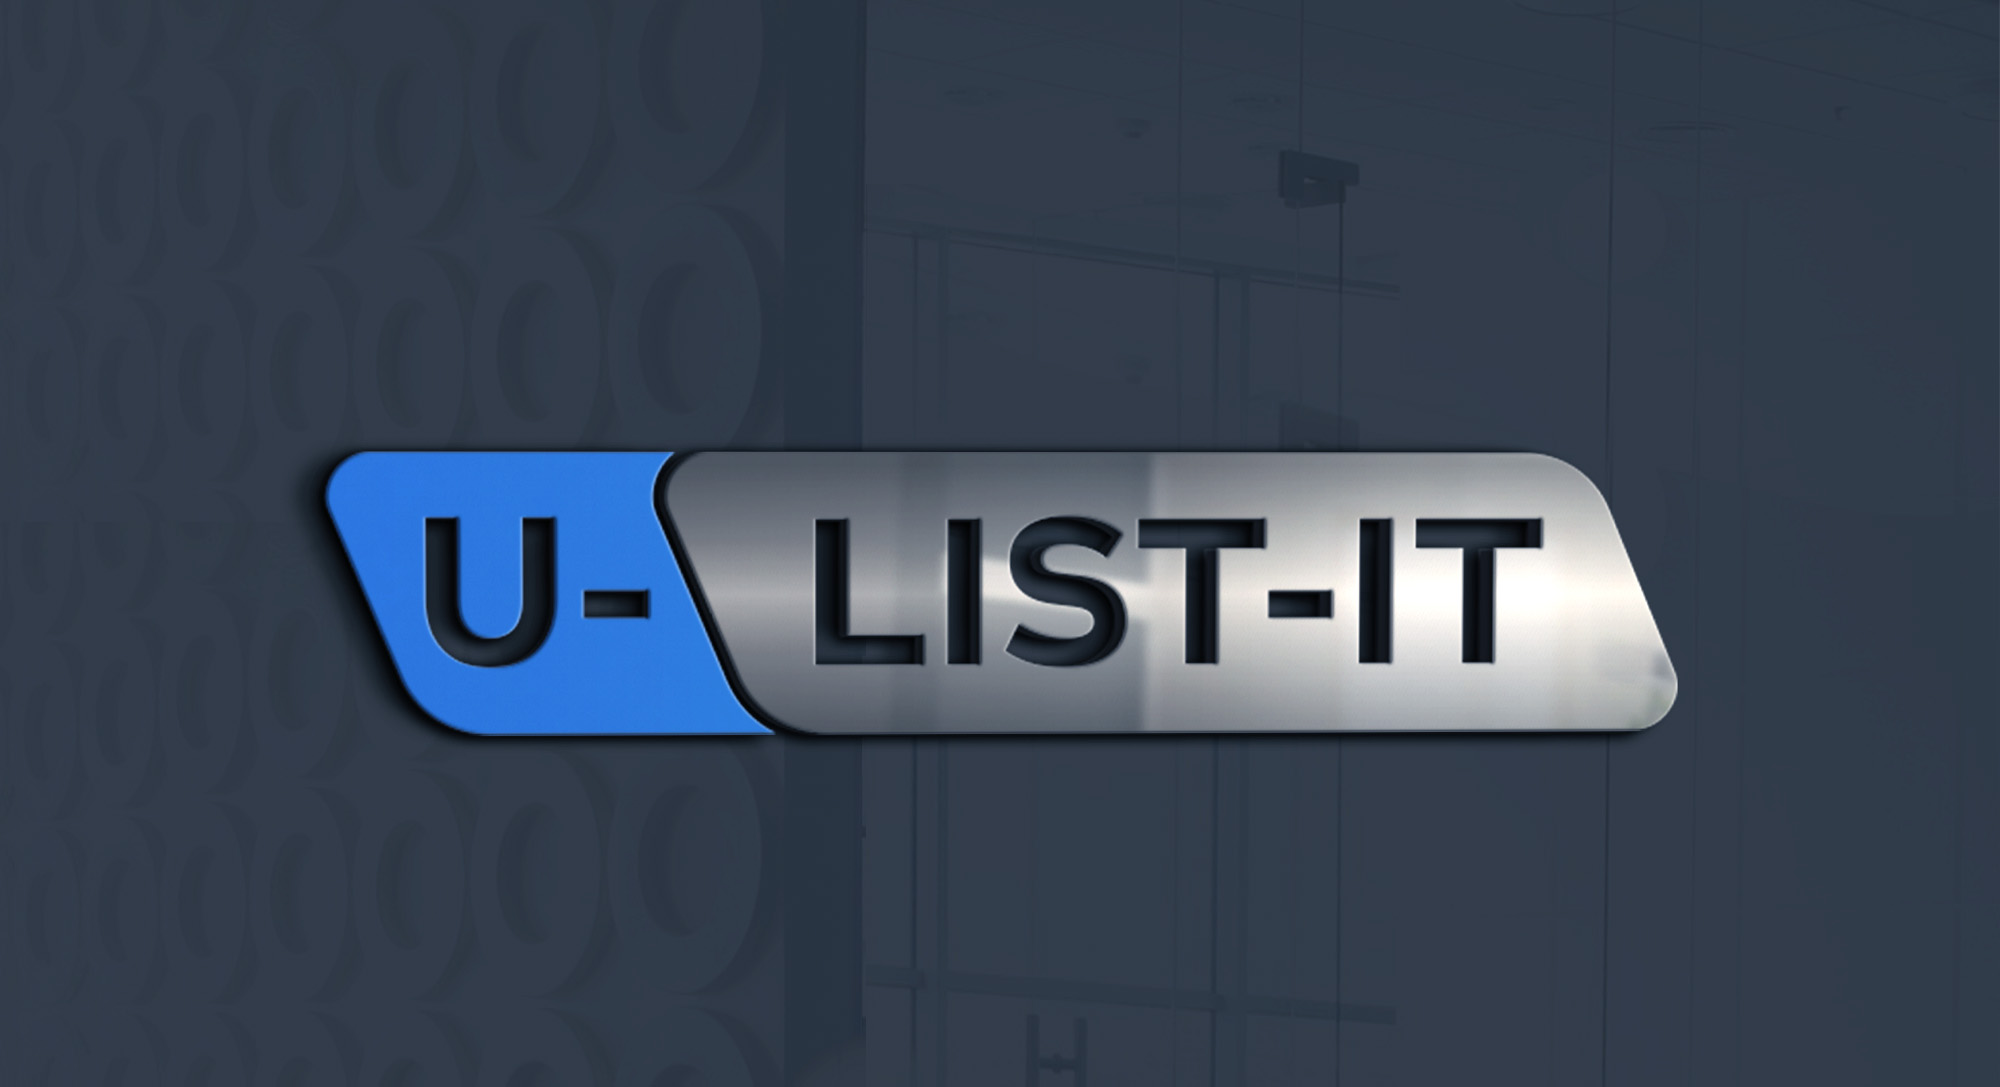 U-list-it